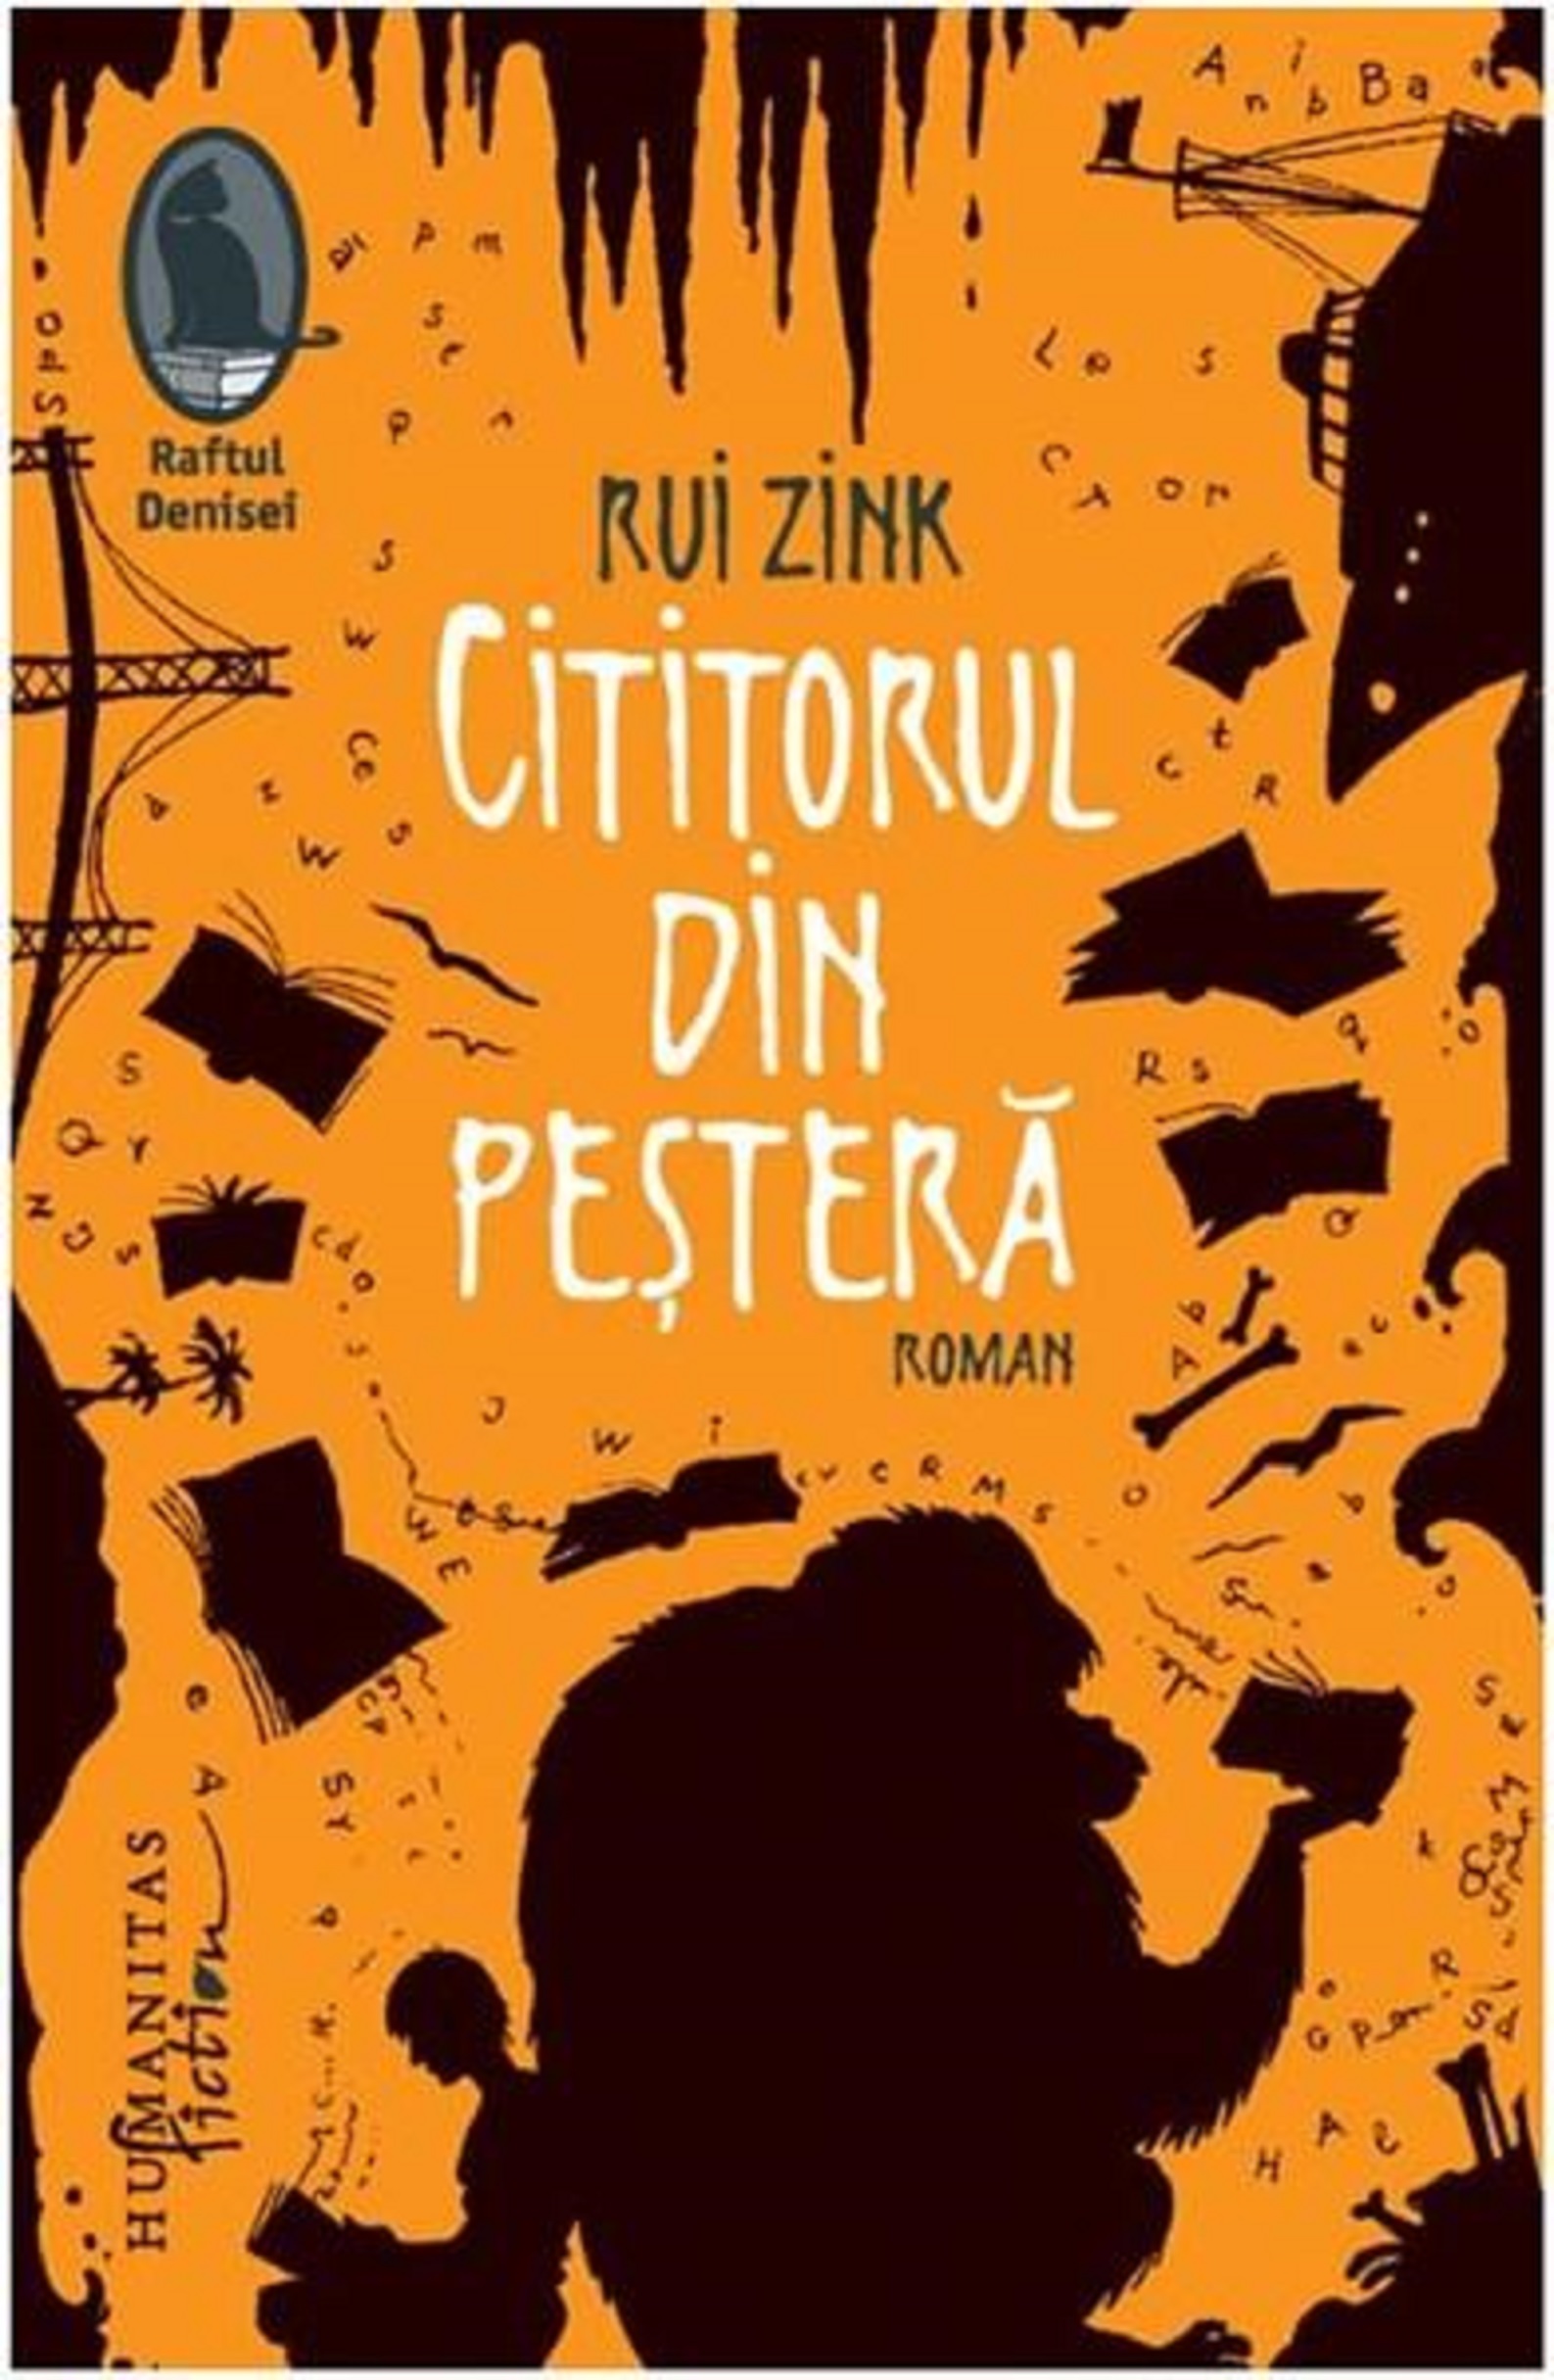 Cititorul din pestera | Rui Zink carturesti.ro